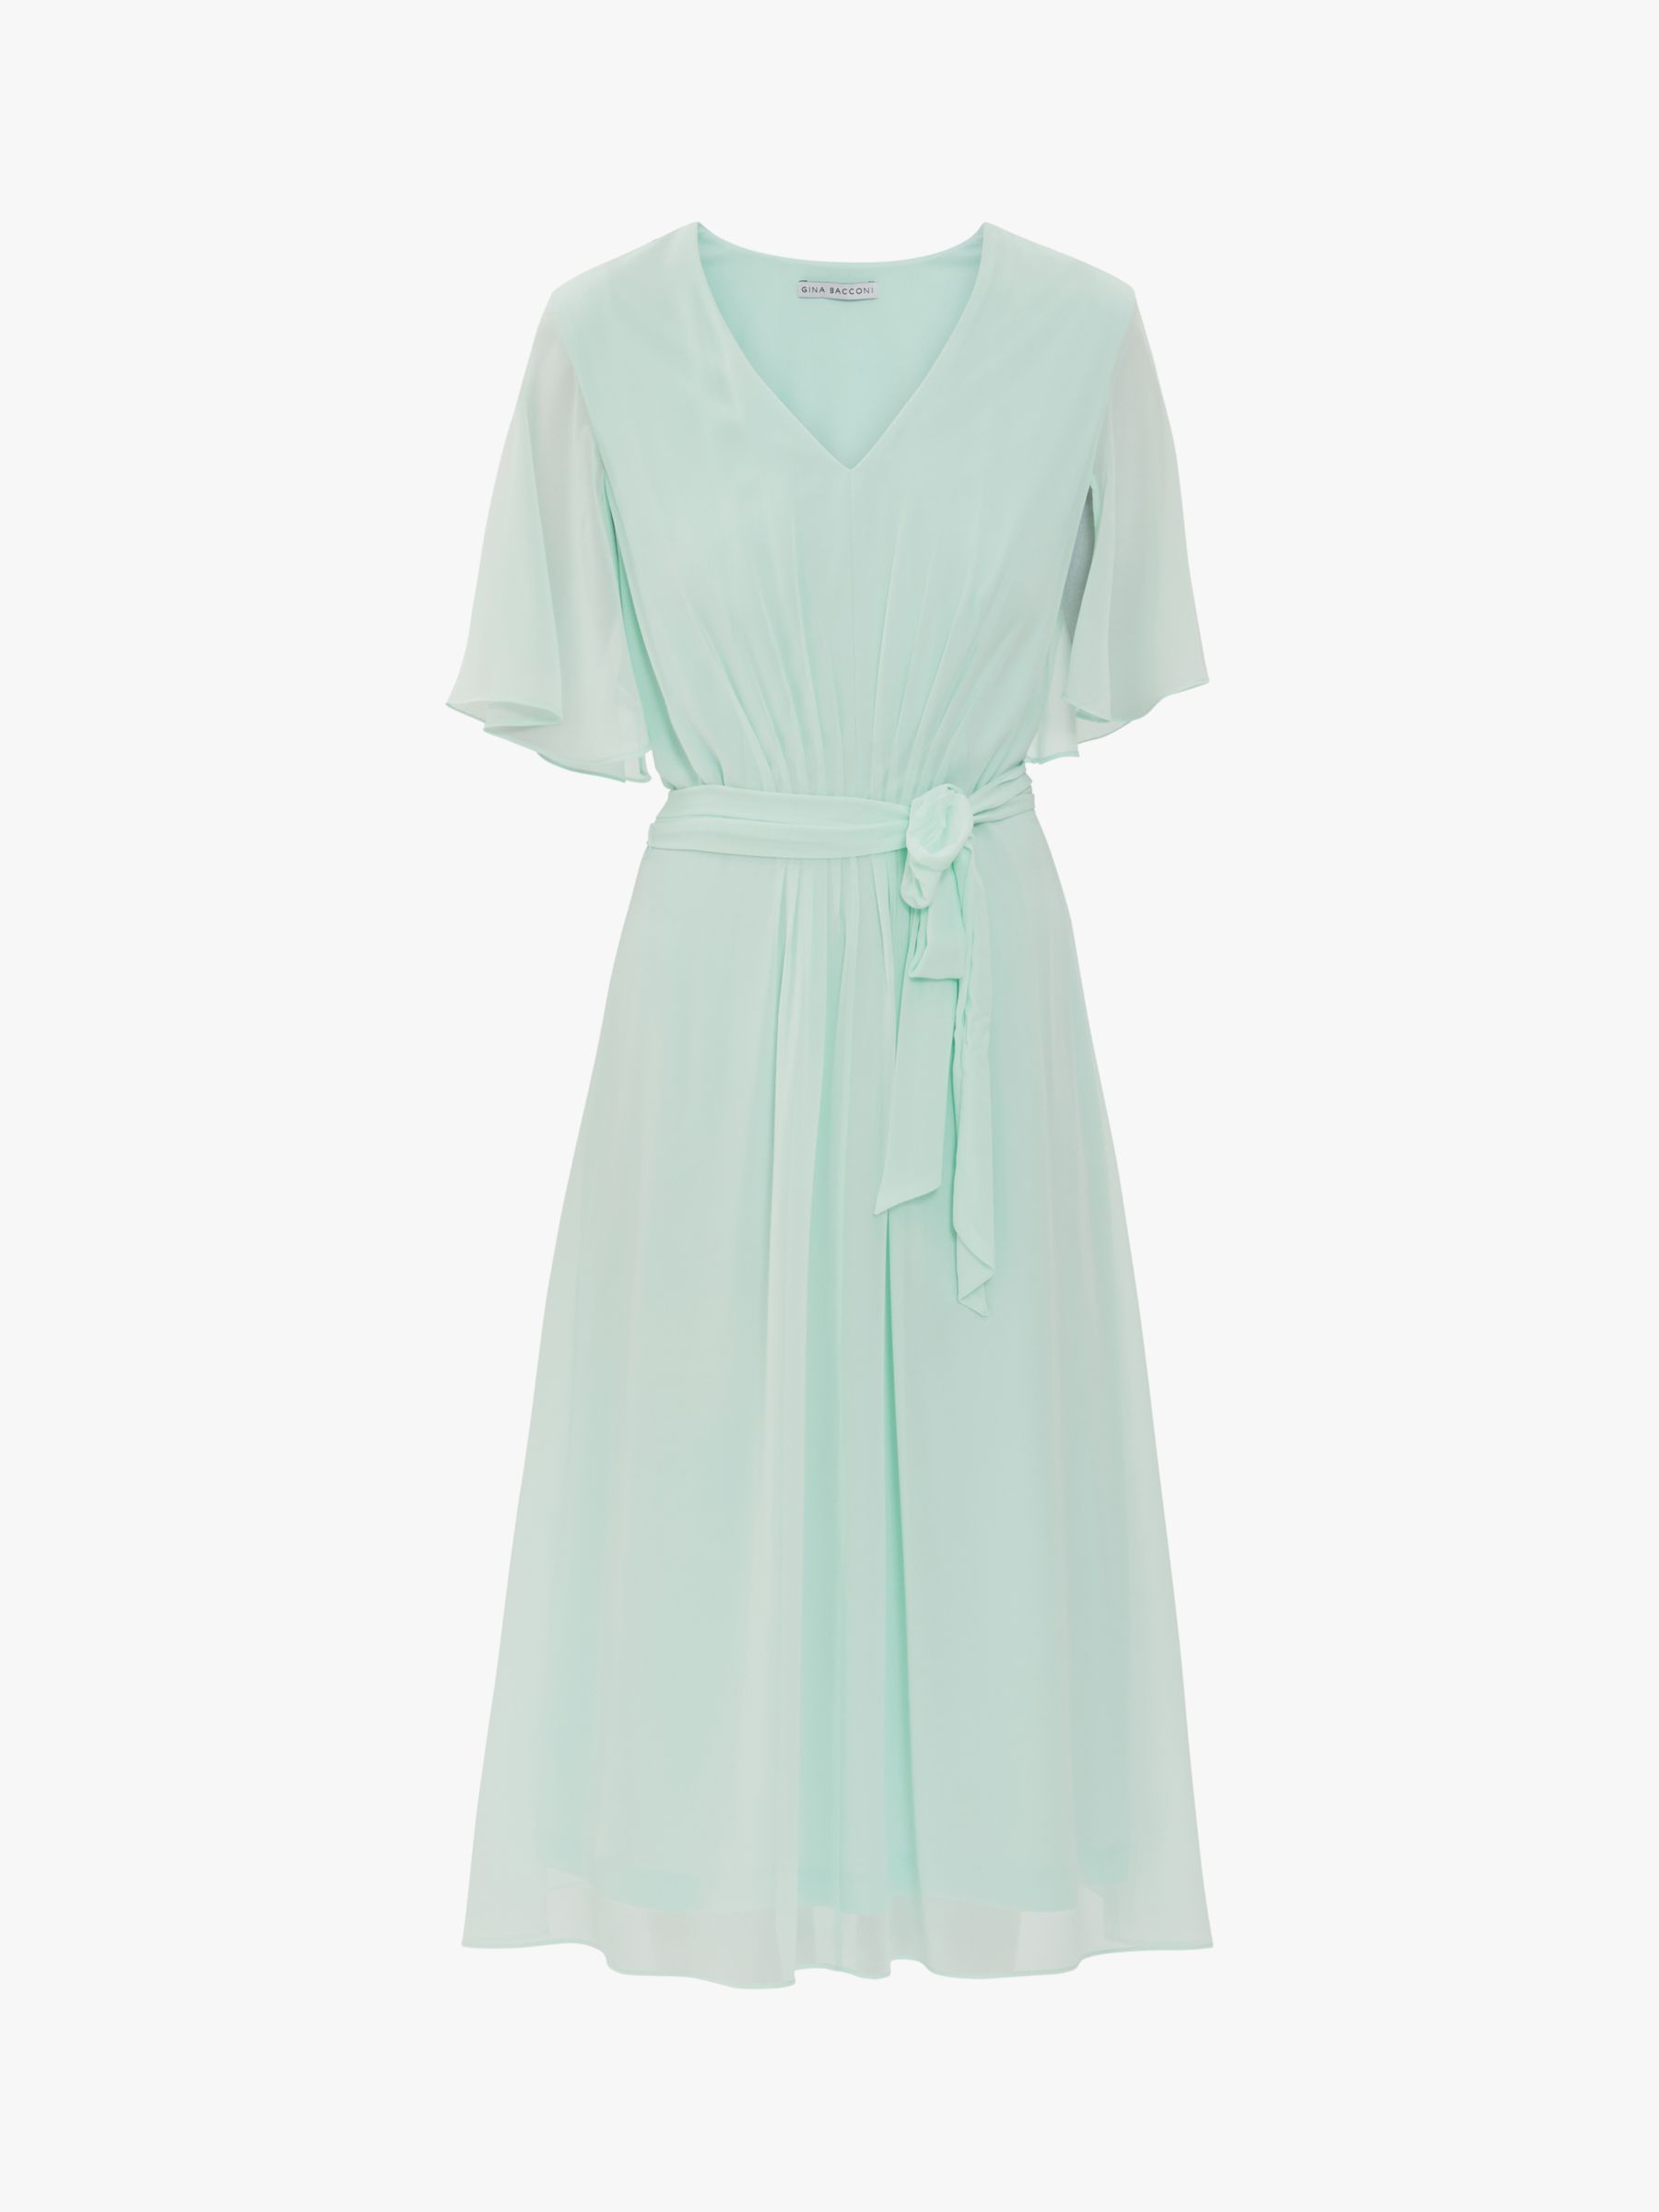 Gina Bacconi Lizelle Chiffon Dress, Soft Mint at John Lewis & Partners